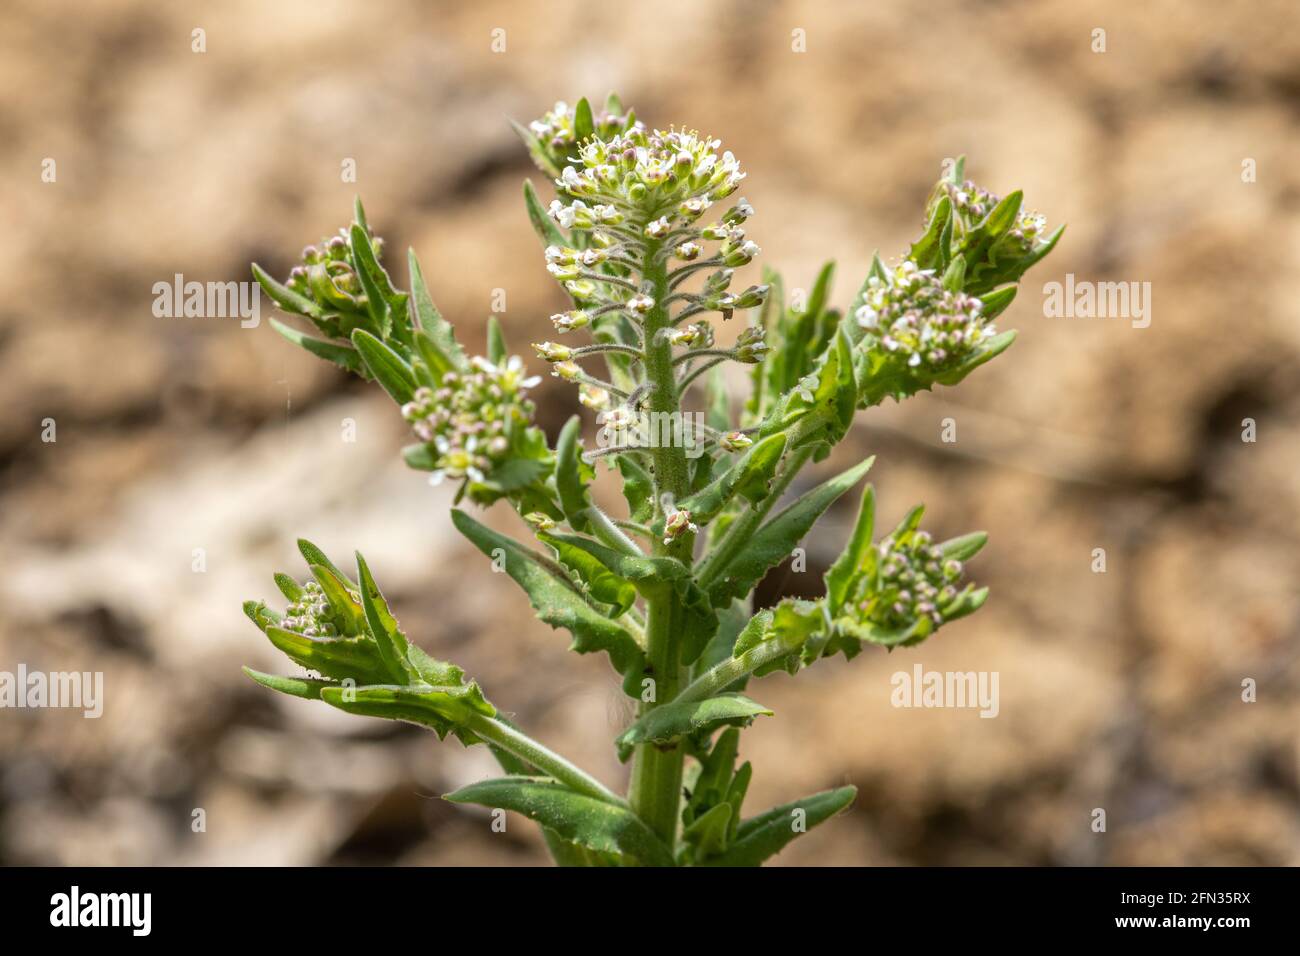 Lepidium draba (gebräuchliche Namen Hufkresse oder Weißkresse), ein mehrjähriges Kraut aus der Familie der Brassicaceae, Großbritannien Stockfoto